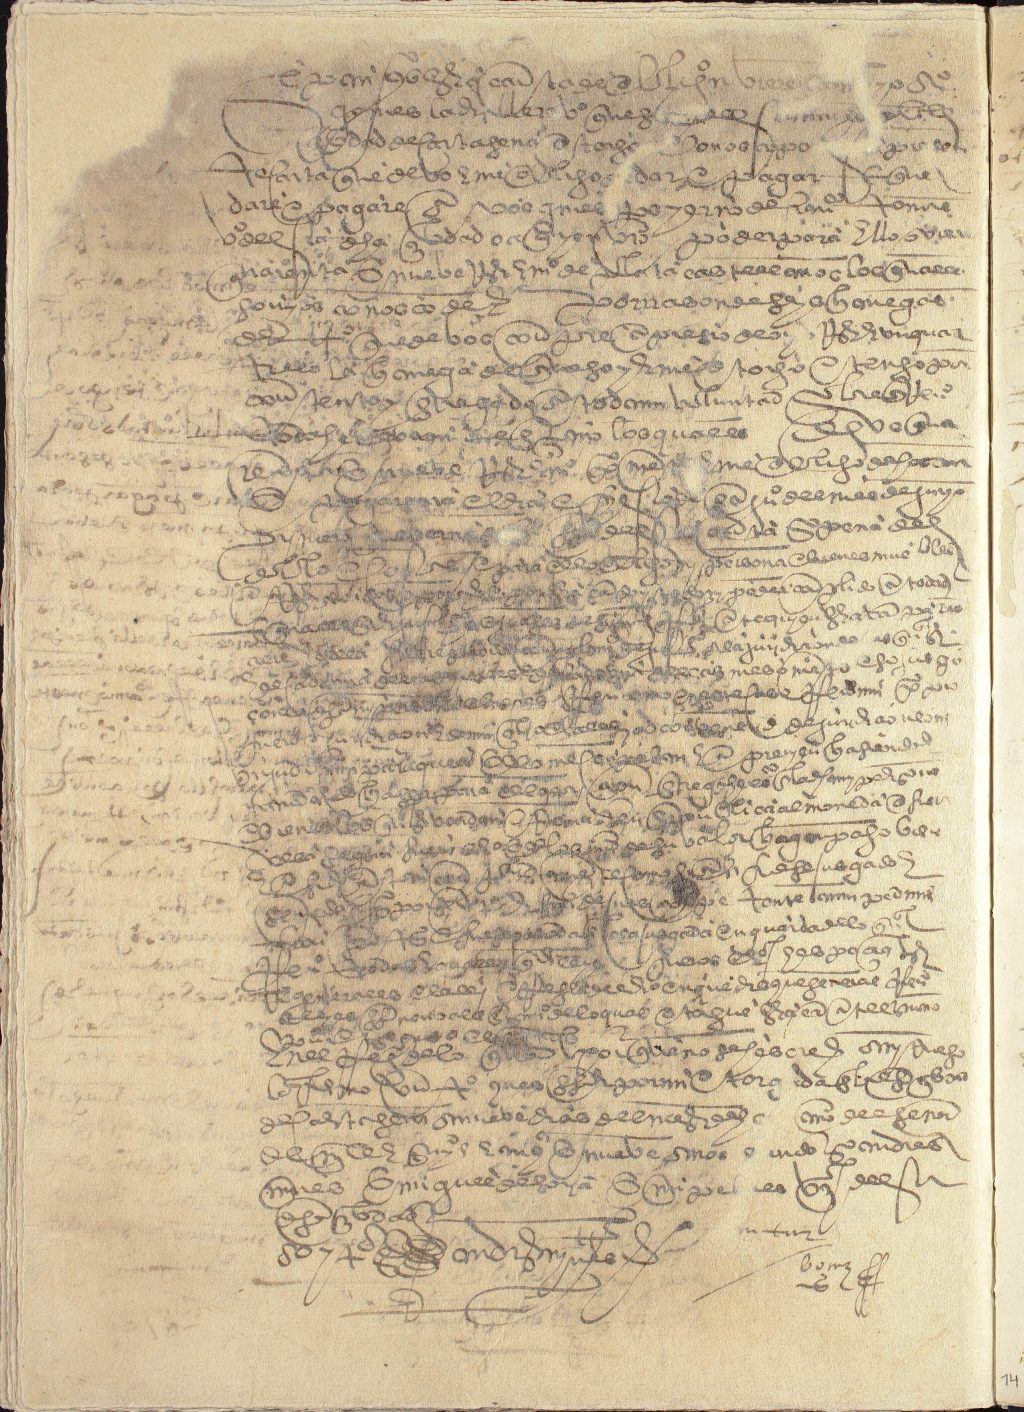 Obligación de pago de Alonso Gómez a favor de Ginés Rodríguez, yerno de Francisco Tomás, vecinos de Cartagena, por cuarenta y nueve reales y medio de plata castellanos.